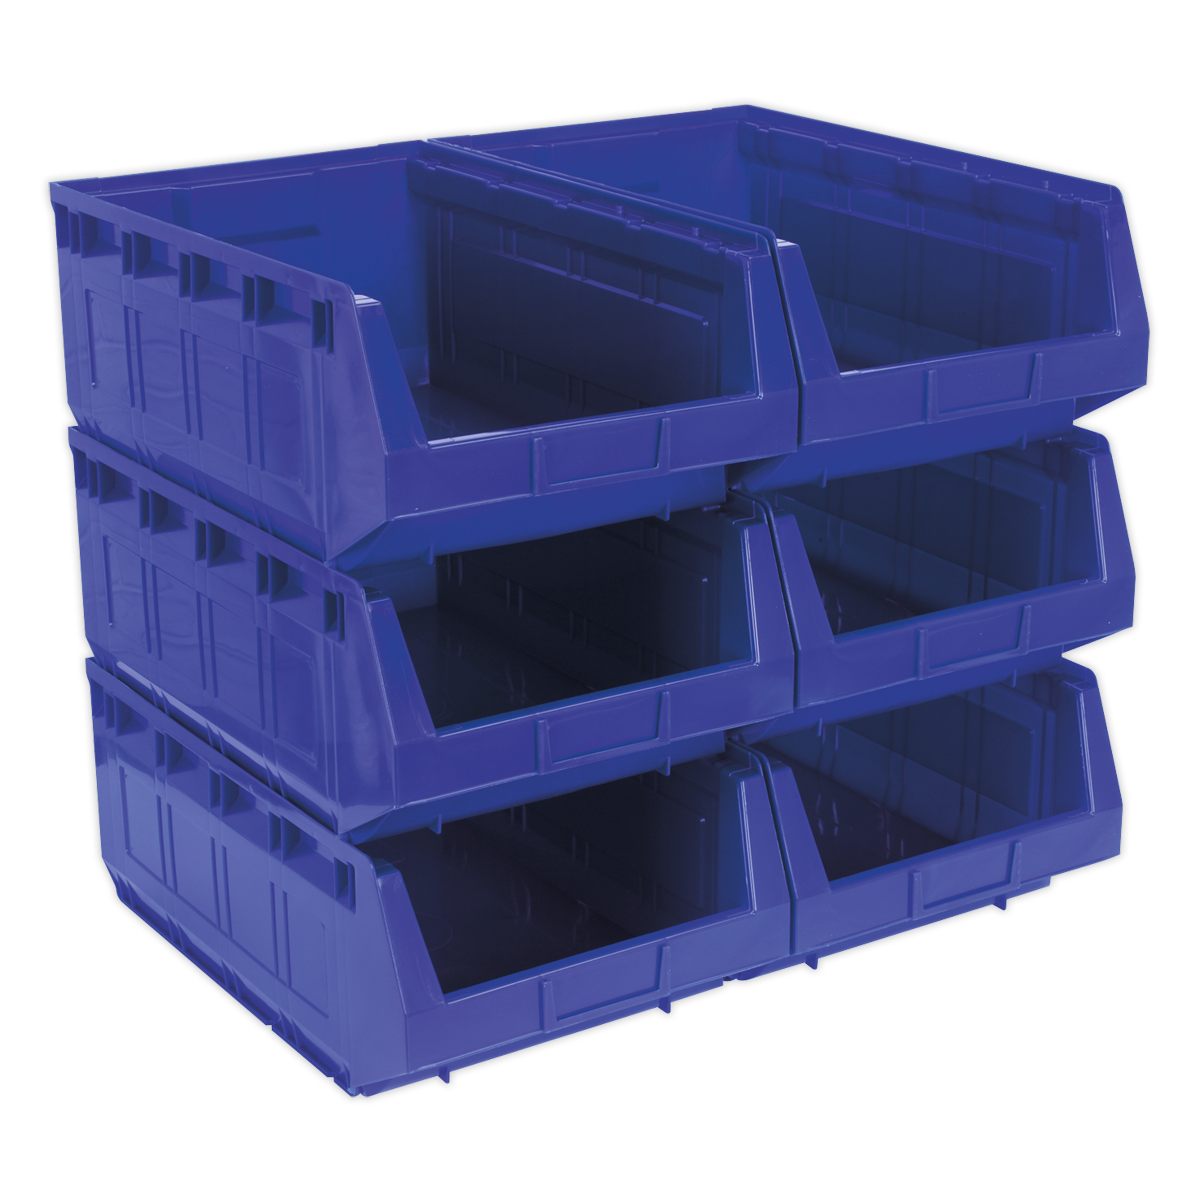 Plastic Storage Bin 310 x 500 x 190mm - Blue Pack of 6 - TPS56B - Farming Parts